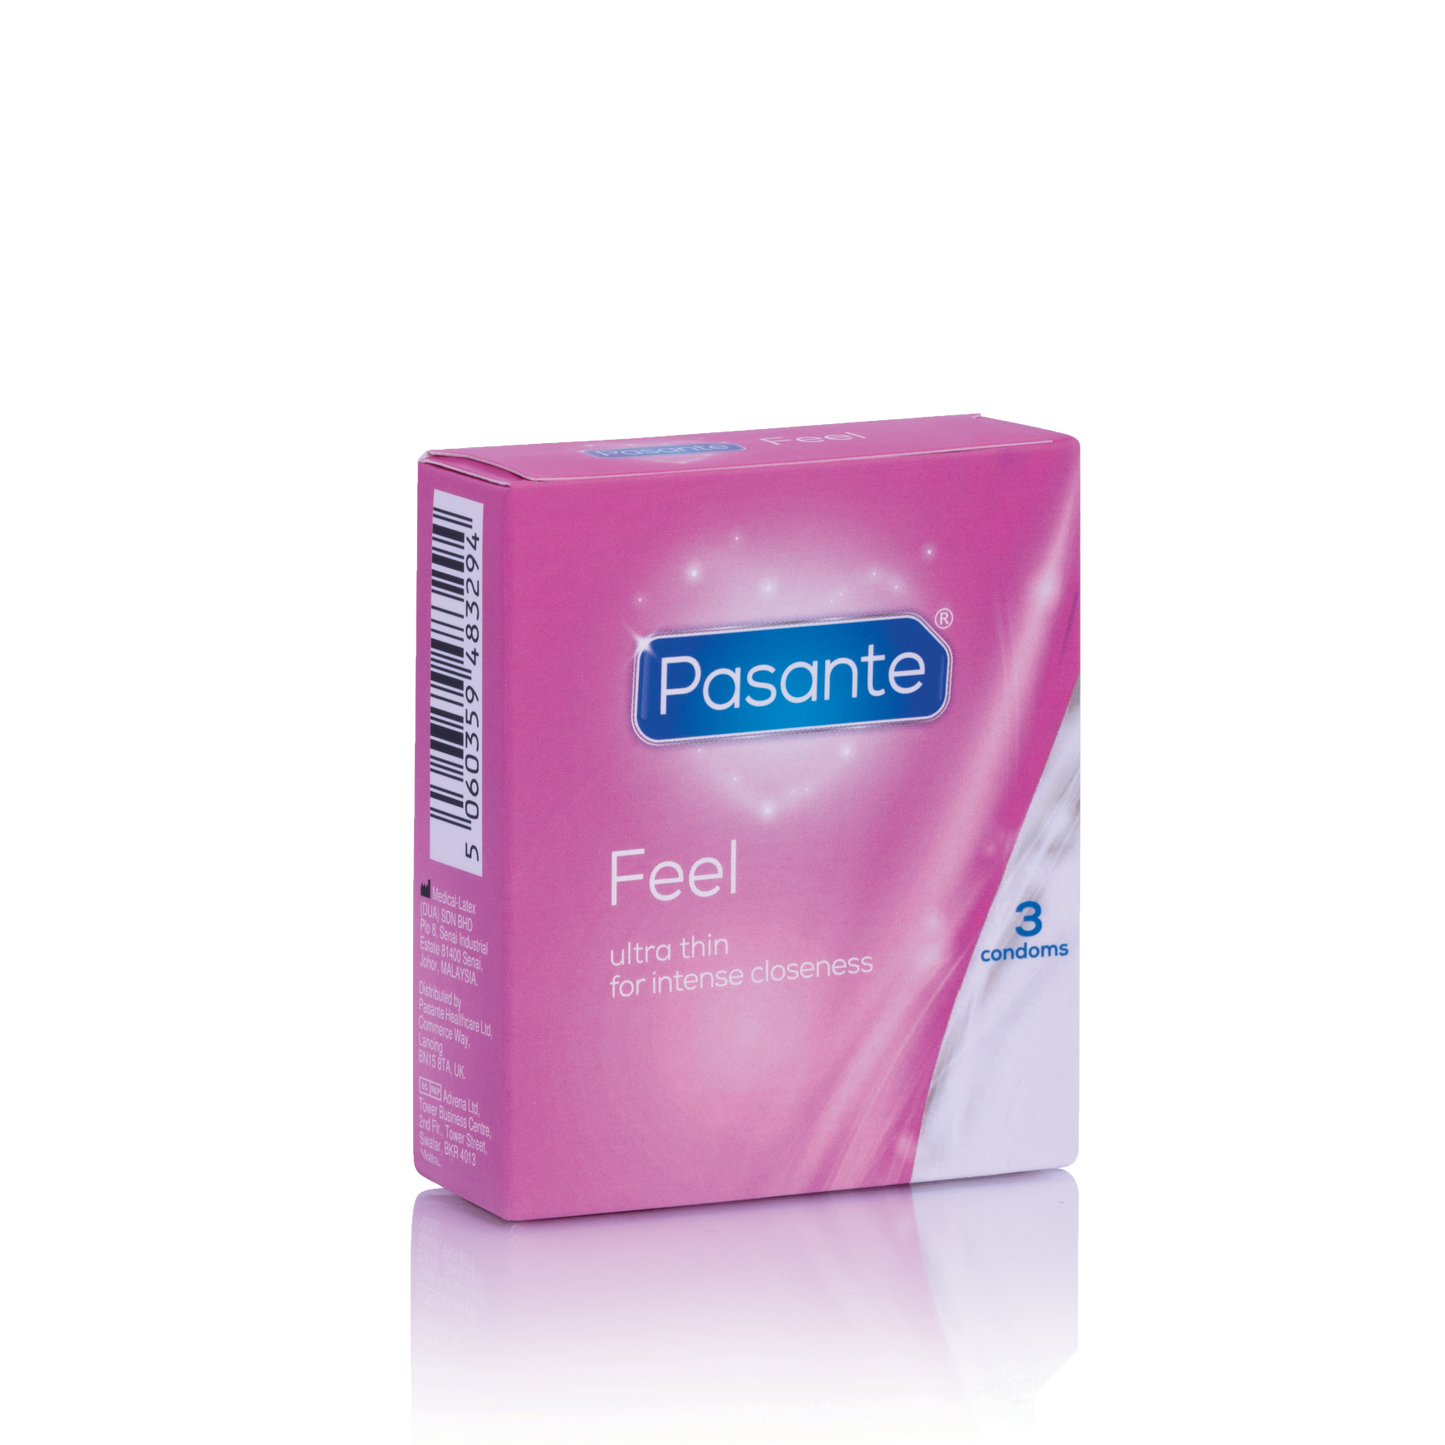 Pasante Feel Condoms